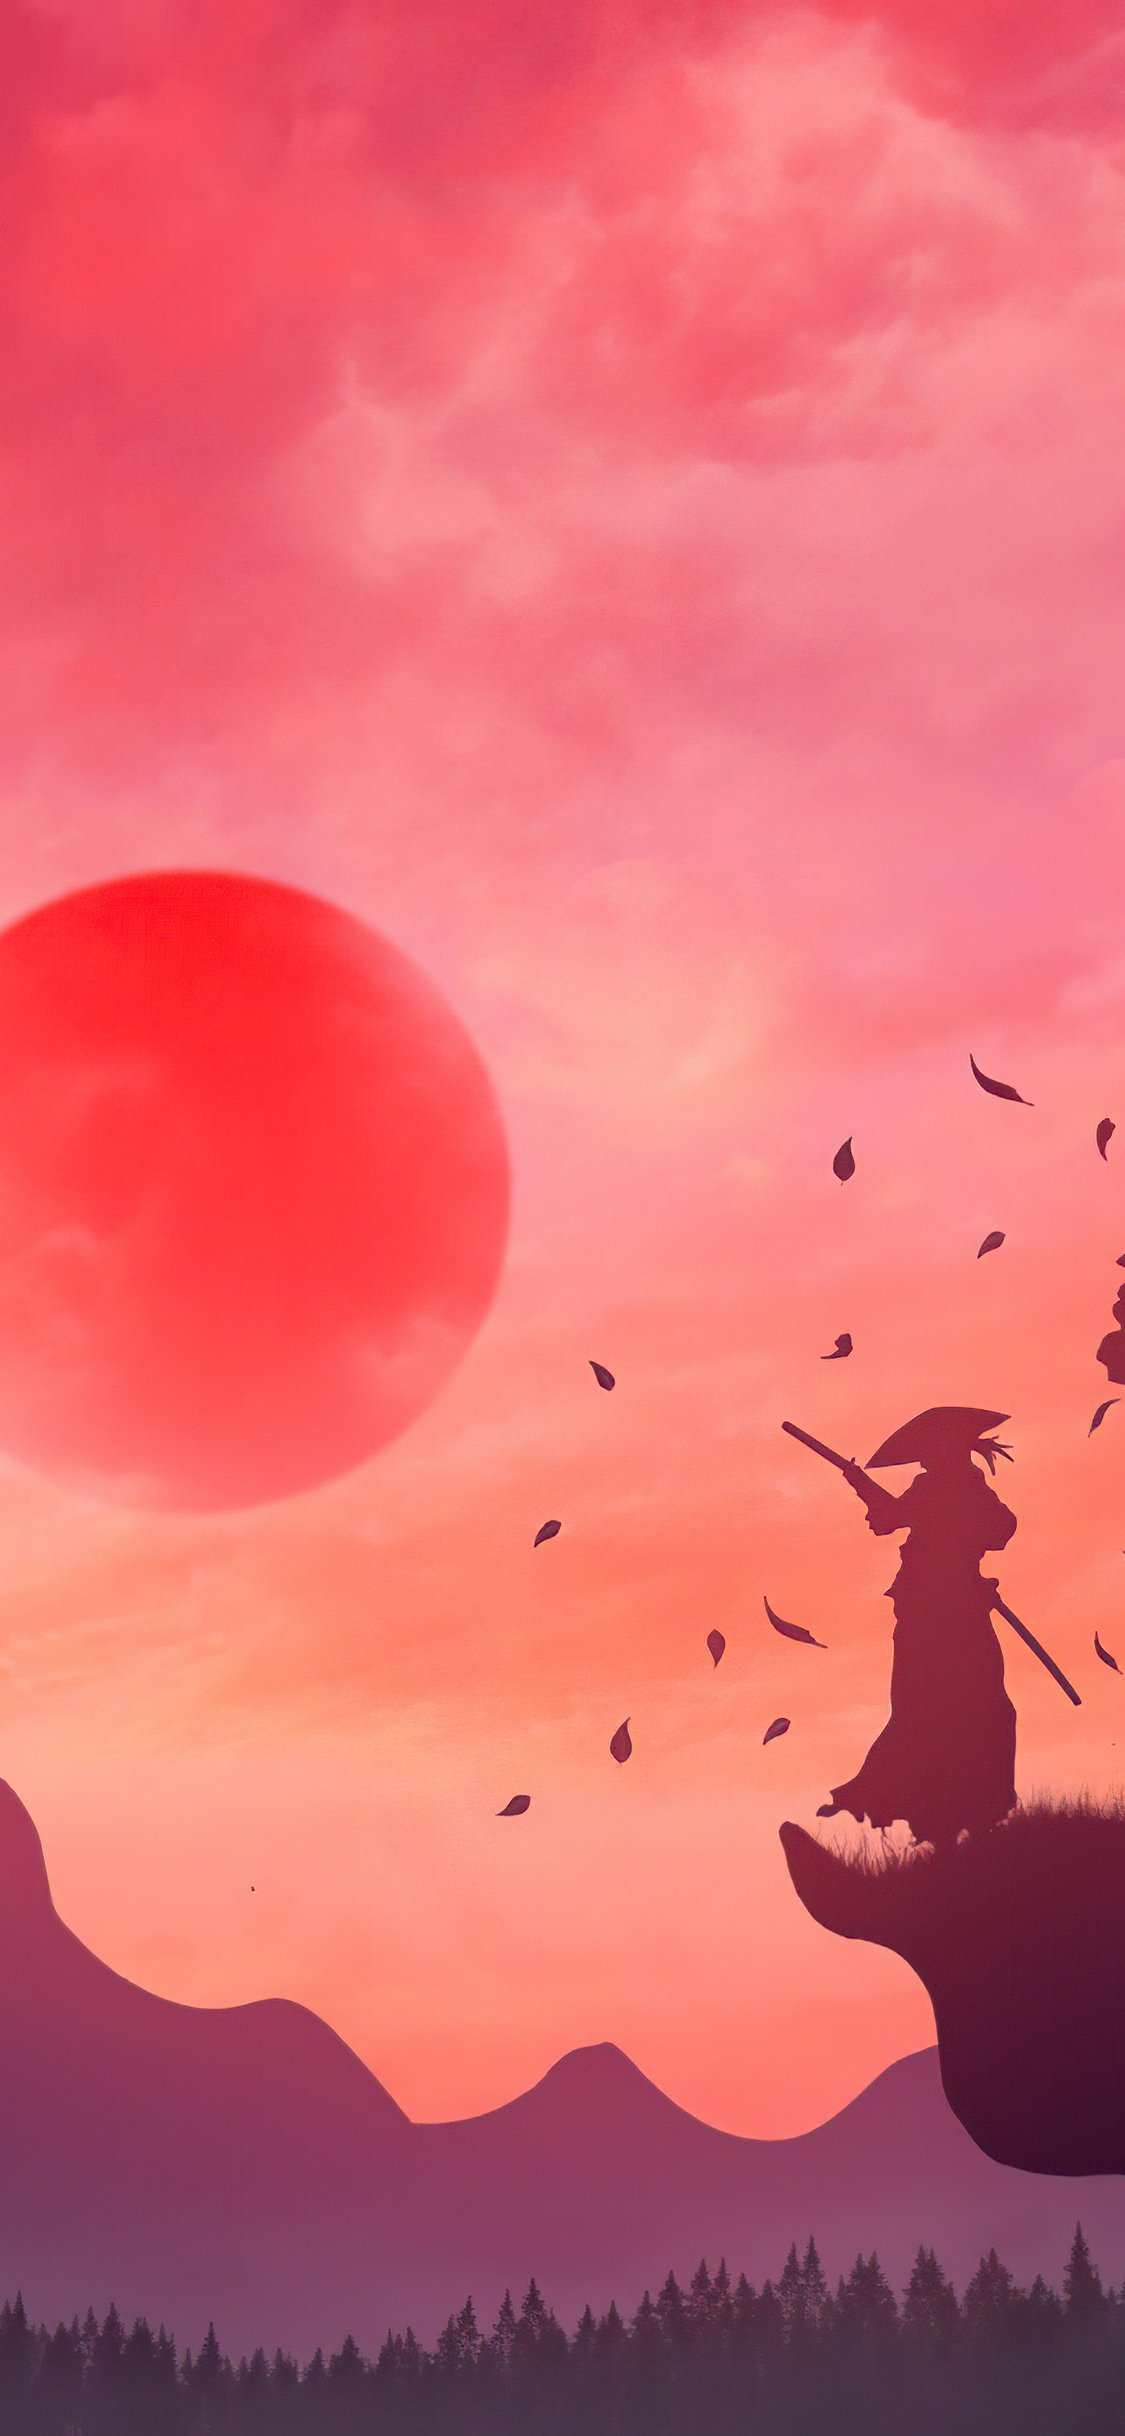 Samurai Ronin Fantasy 4K Wallpaper iPhone HD Phone #840h